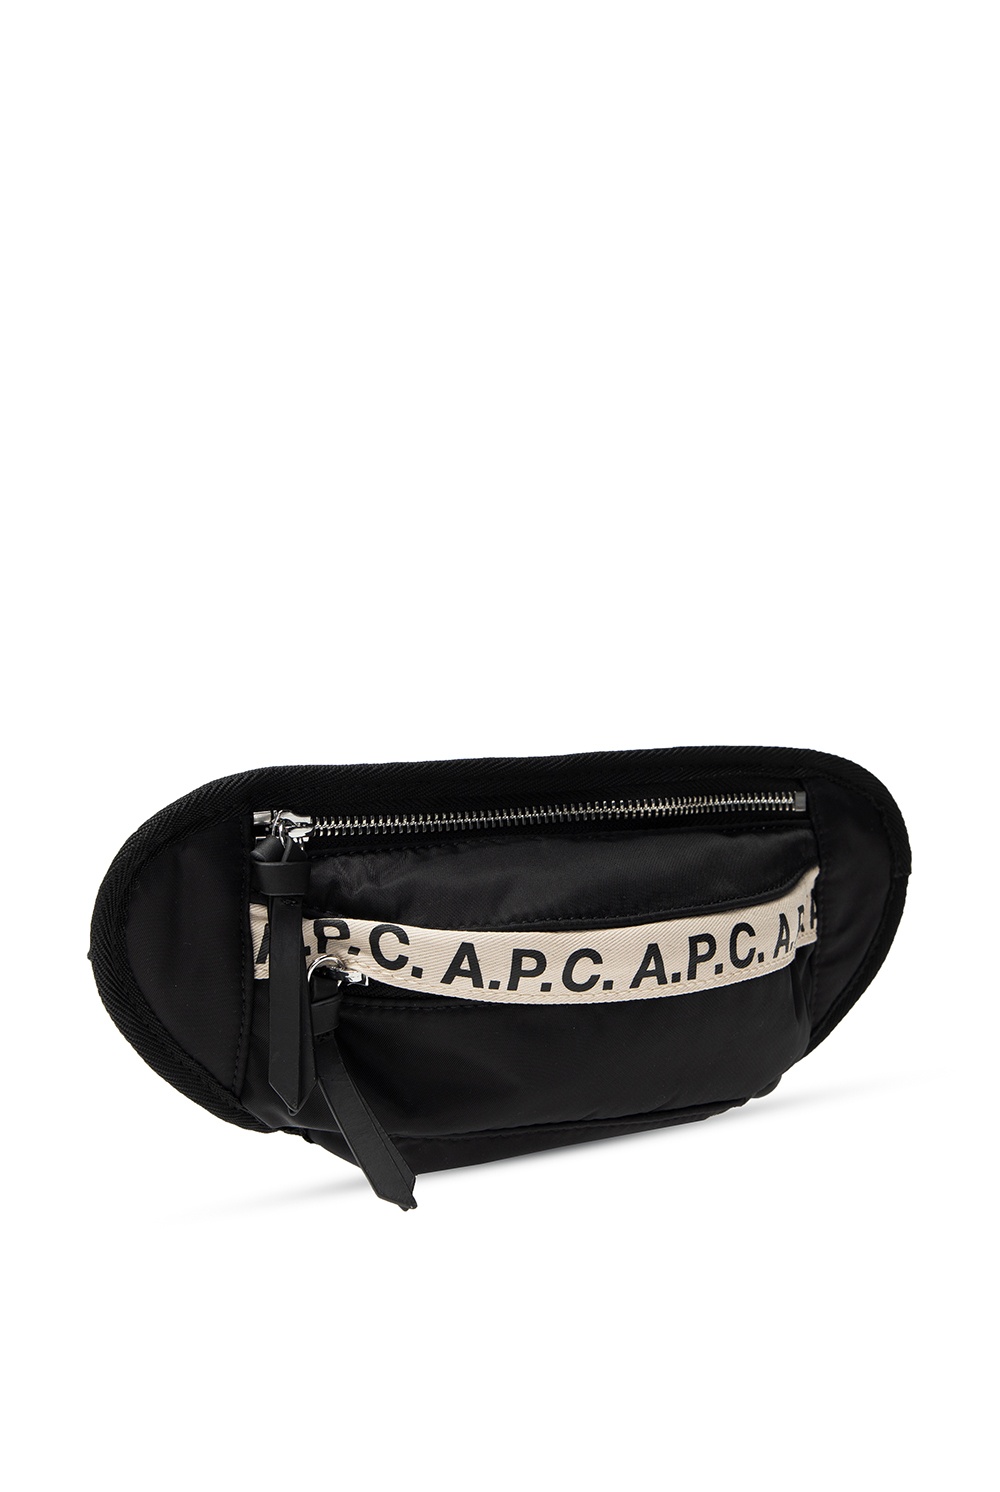 A.P.C. ‘Repeat’ belt bag